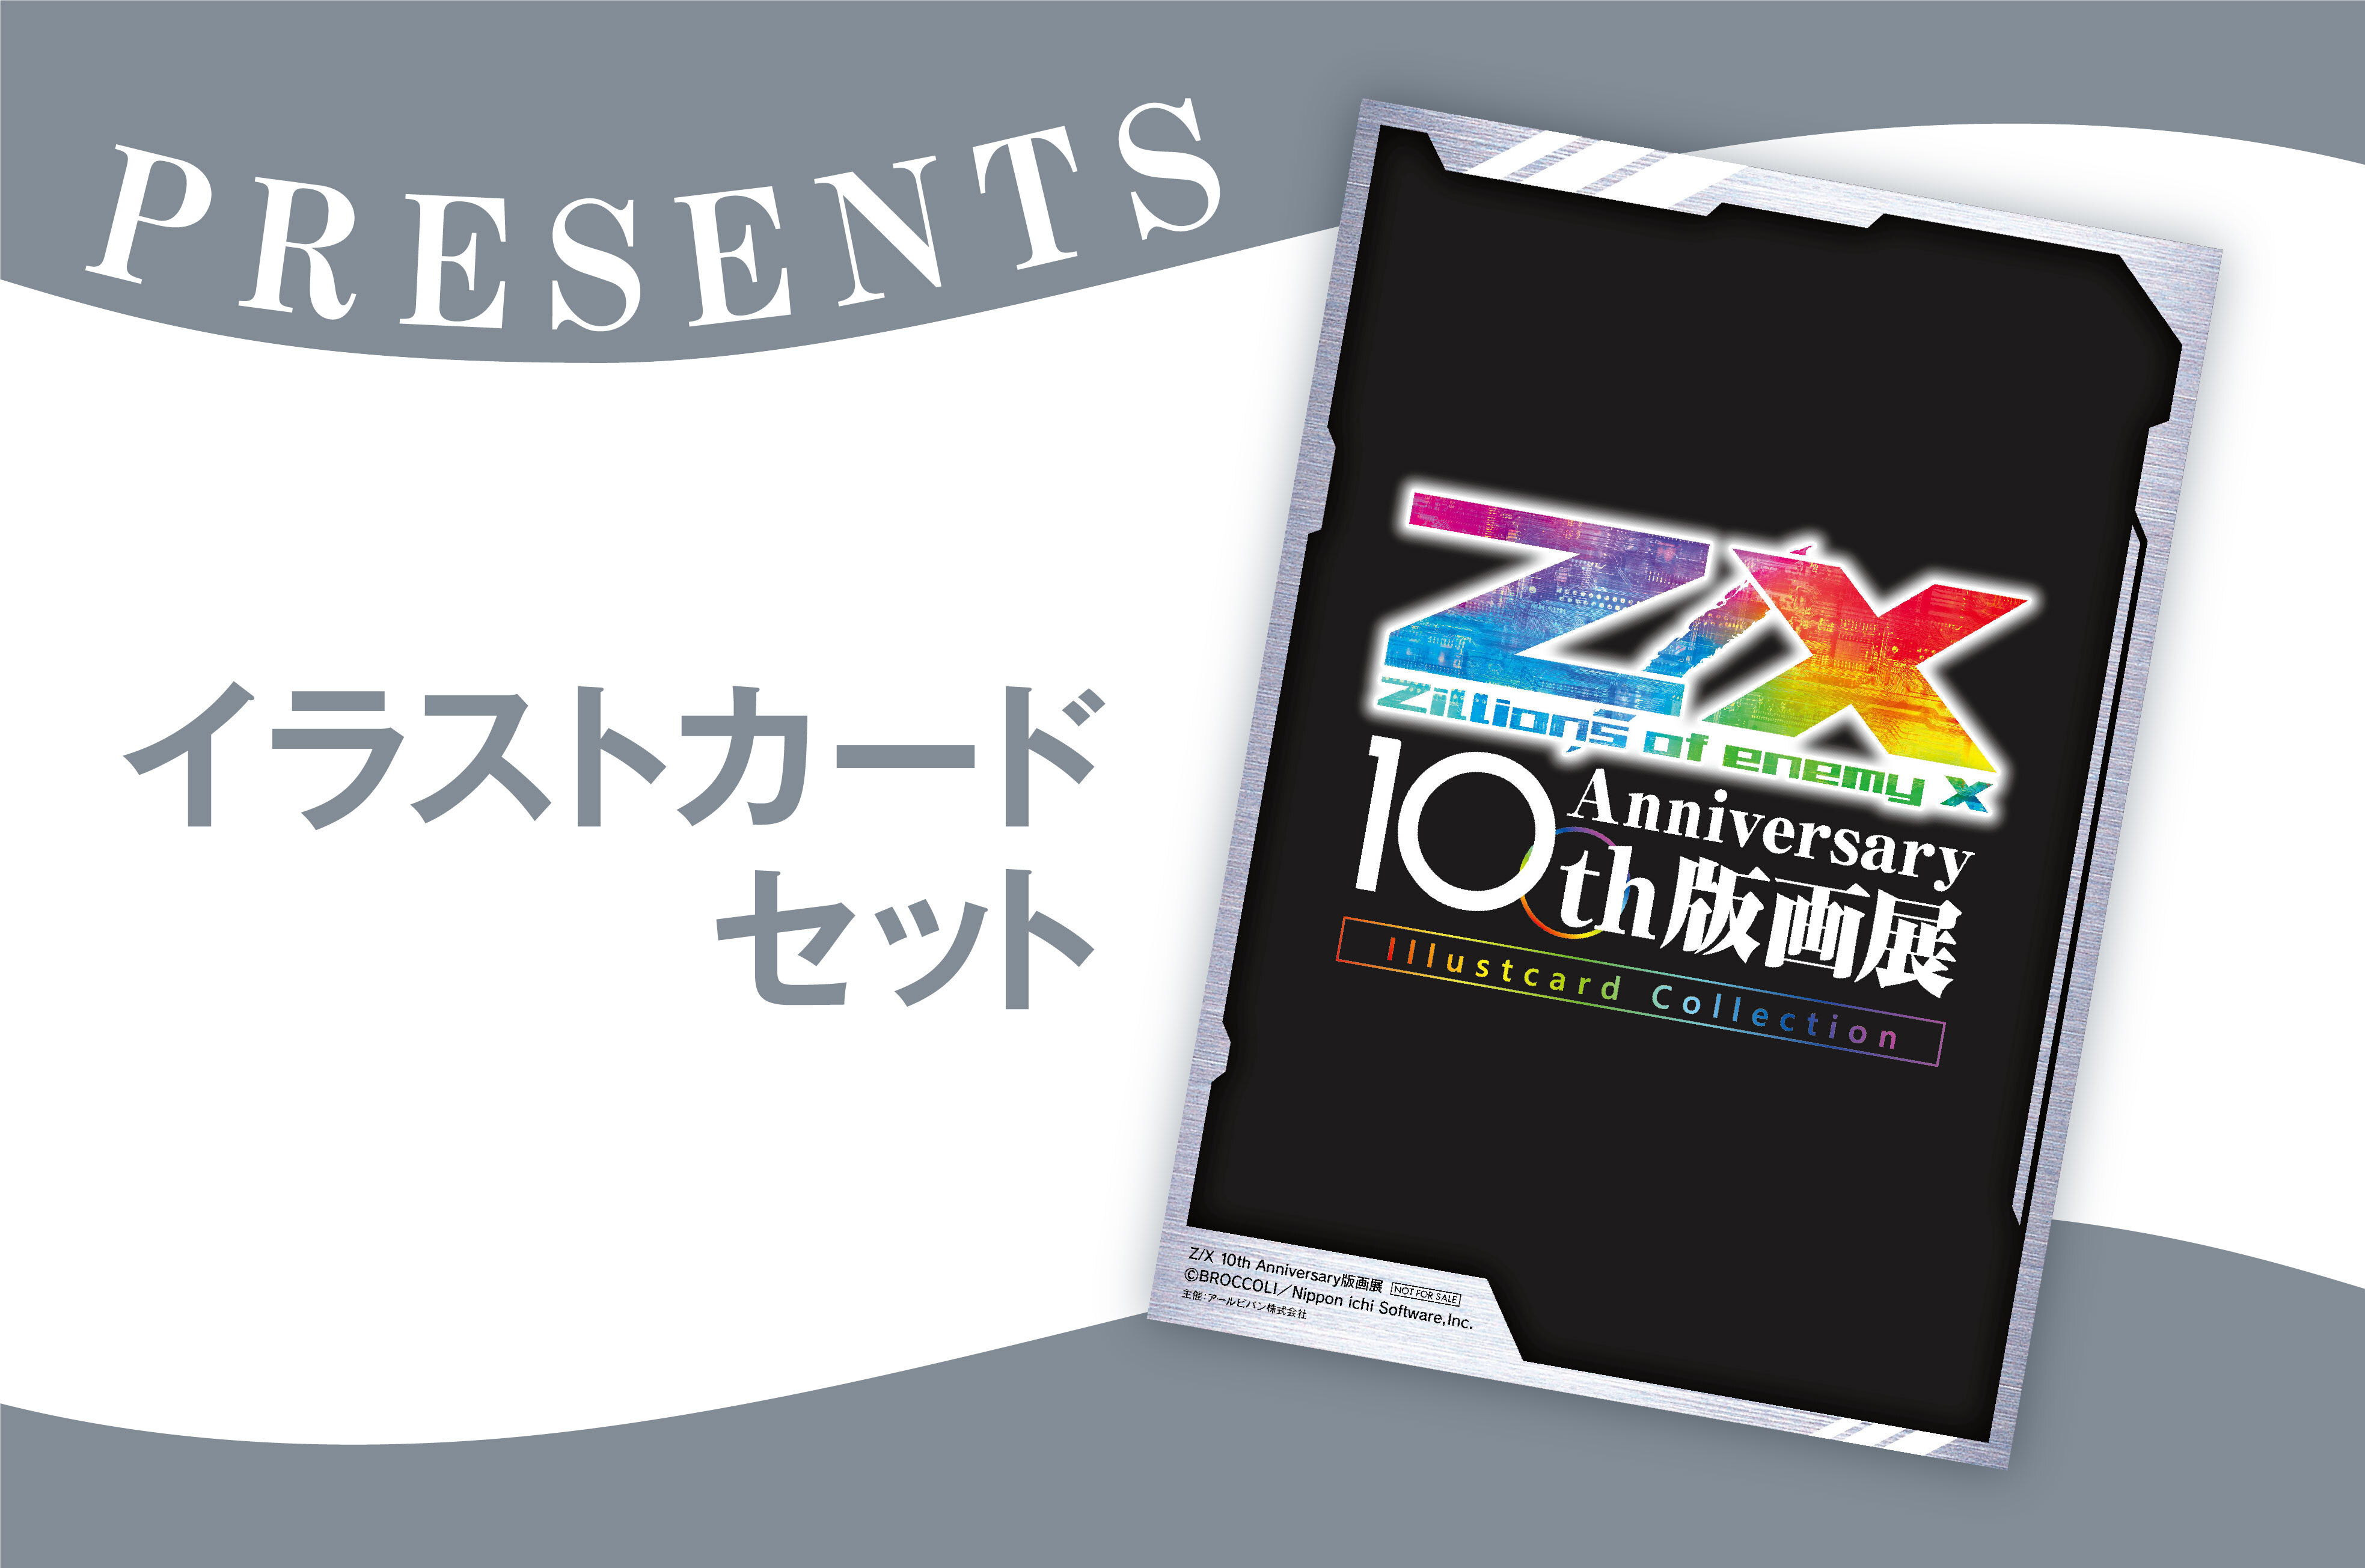 展示会情報（愛知県/Z/X 10th Anniversary 版画展/20220513）/アール 